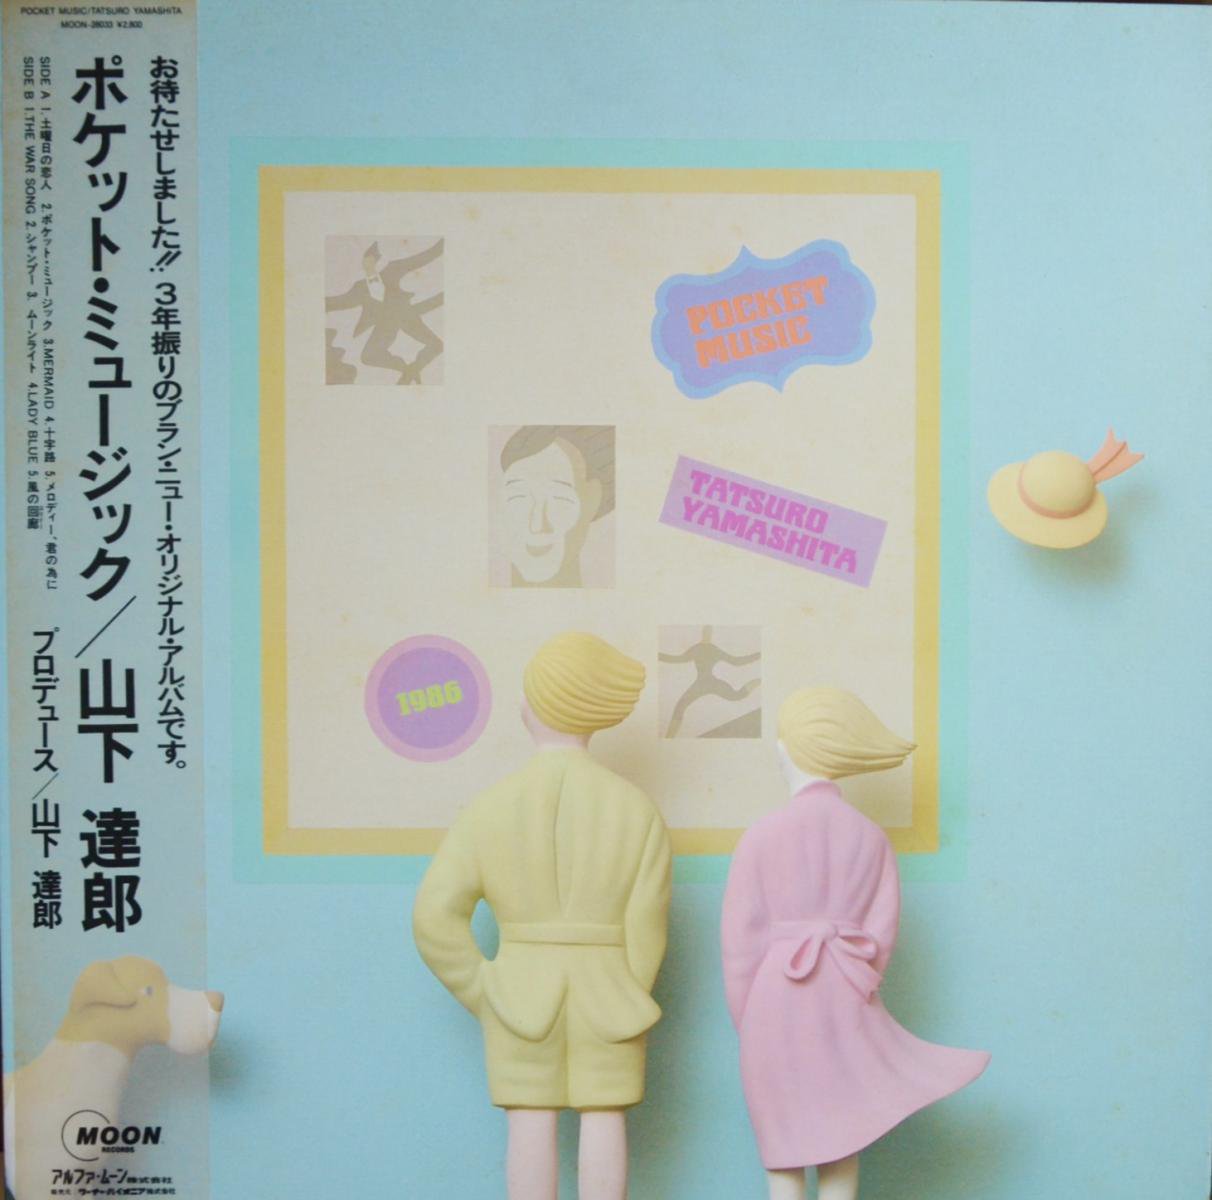 山下達郎 TATSURO YAMASHITA / ポケット・ミュージック POCKET MUSIC (LP)